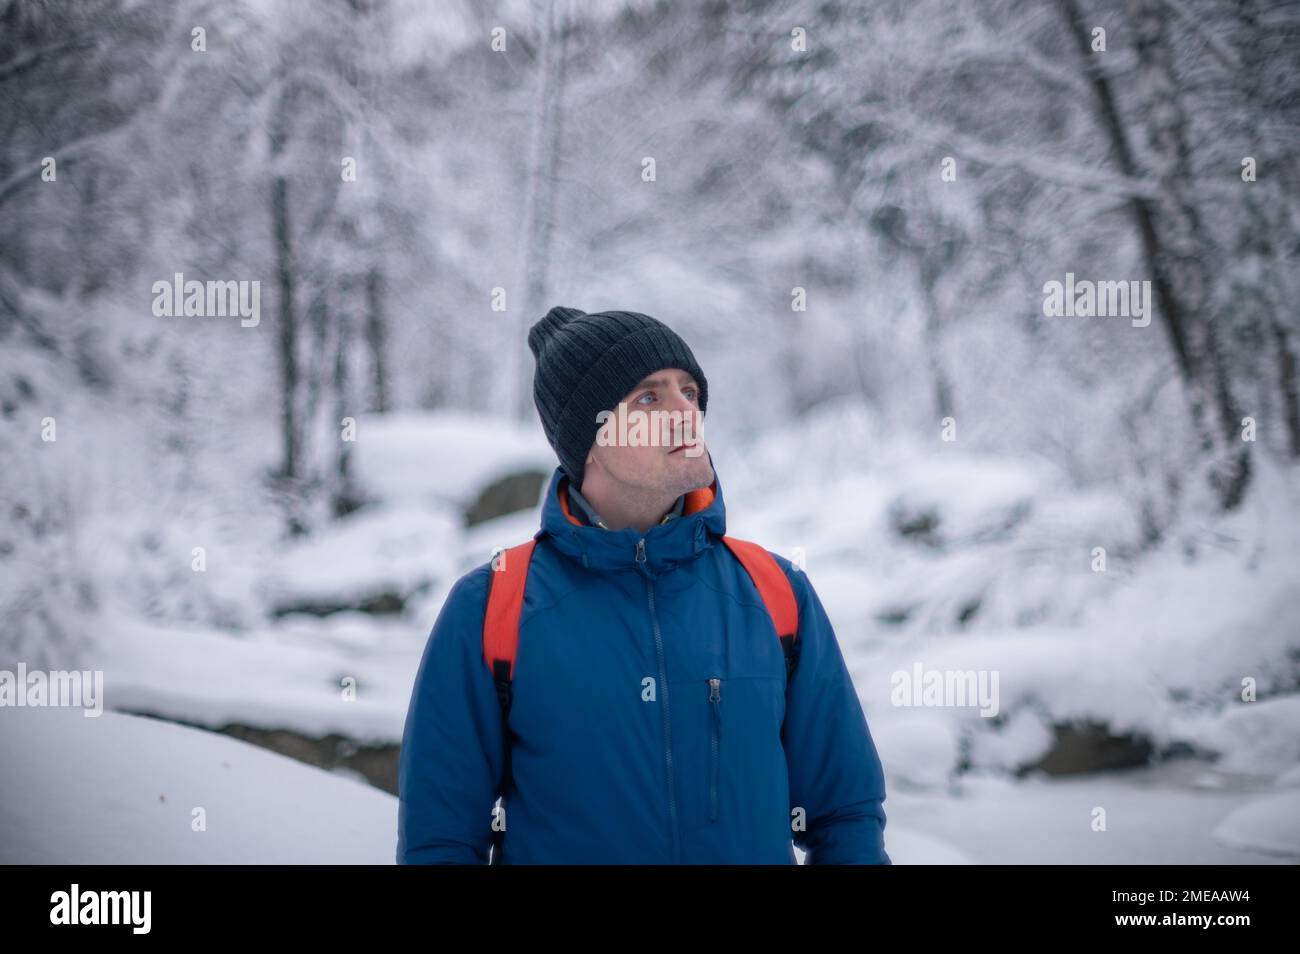 Man in winter jacket walking in snowy winter forest, snowy winter day Stock Photo